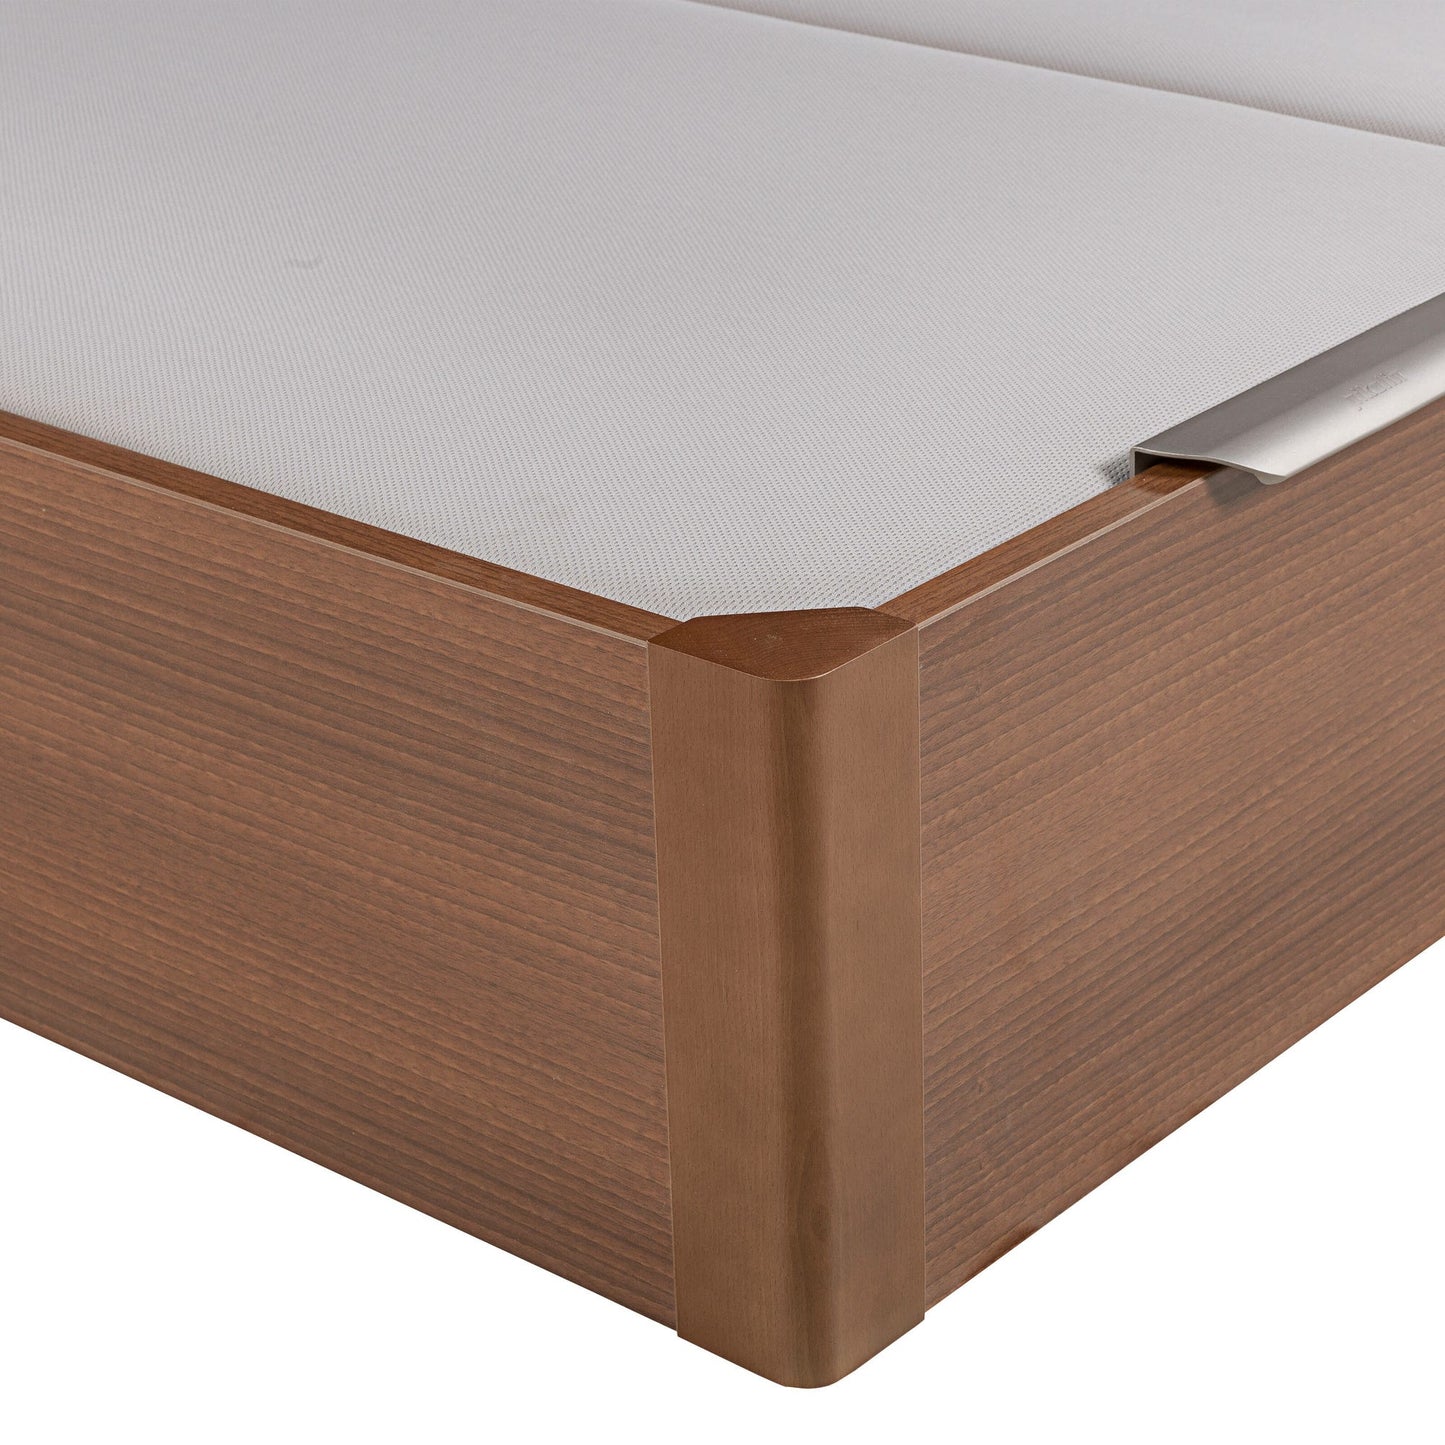 Canapé abatible de madera de tapa doble de color cerezo - DESIGN - 160x220